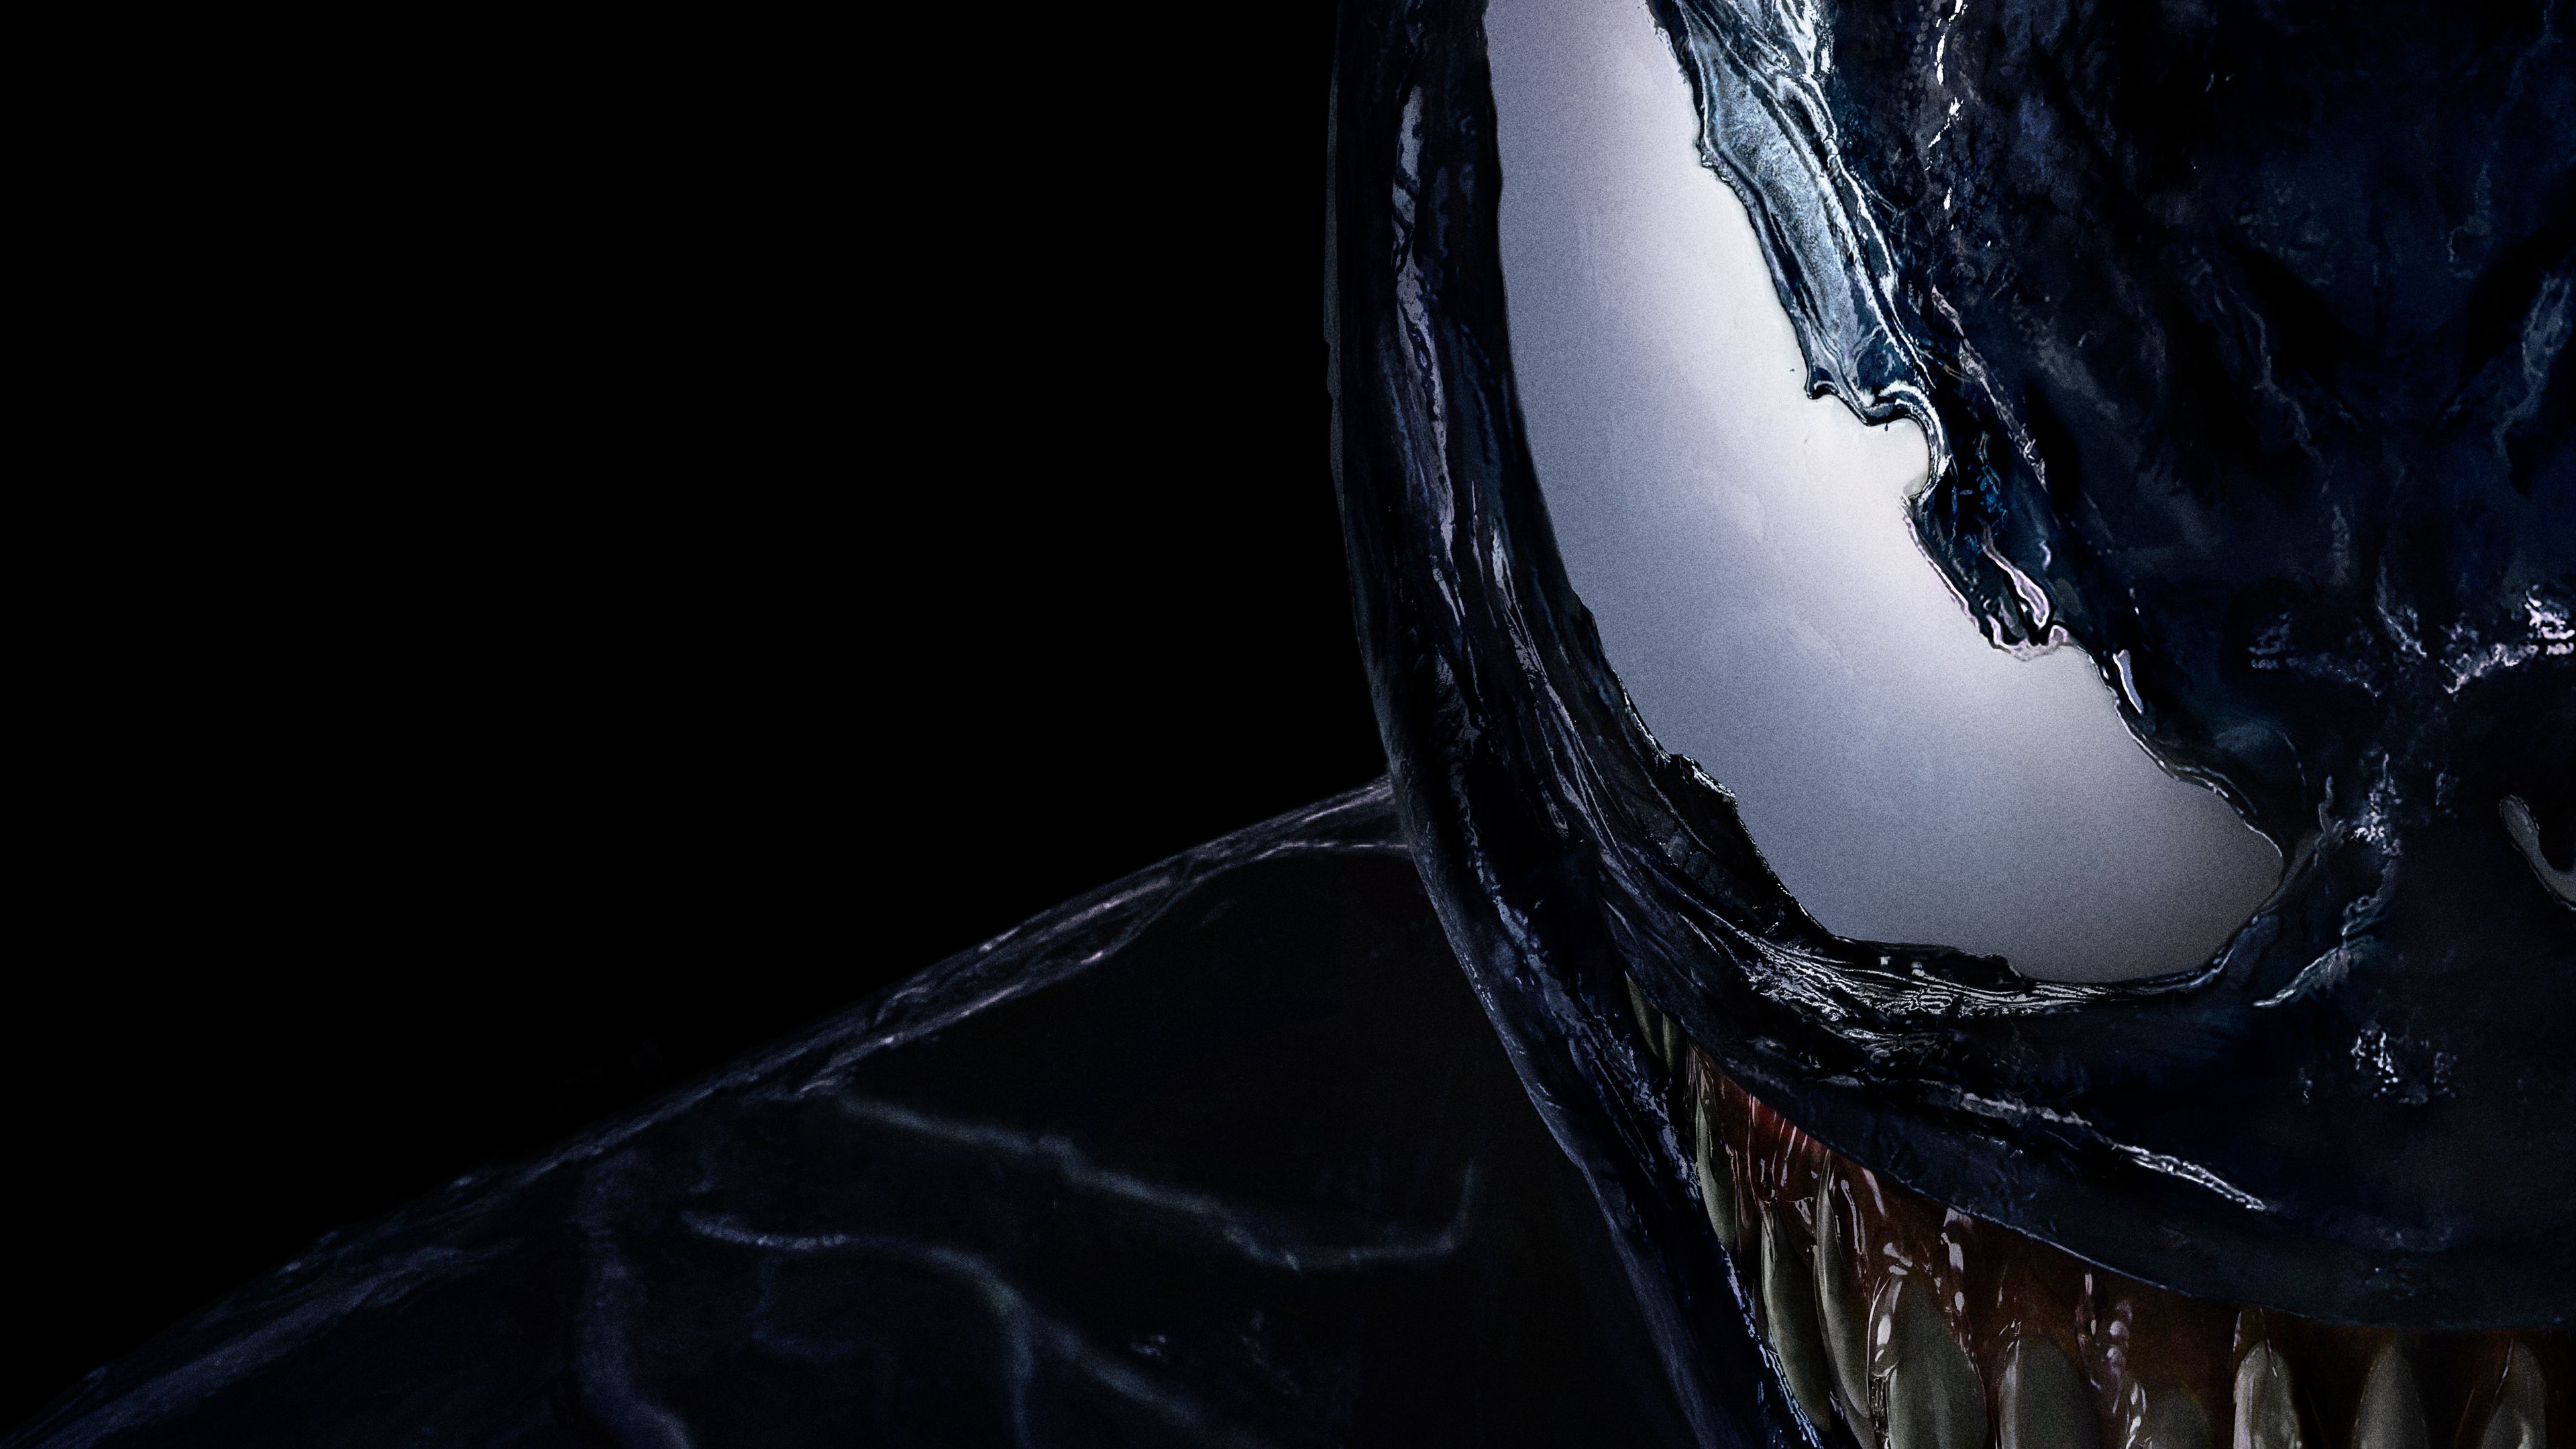 Wallpaper 4k Venom Movie Official Poster 8k 2018 Movies Wallpaper